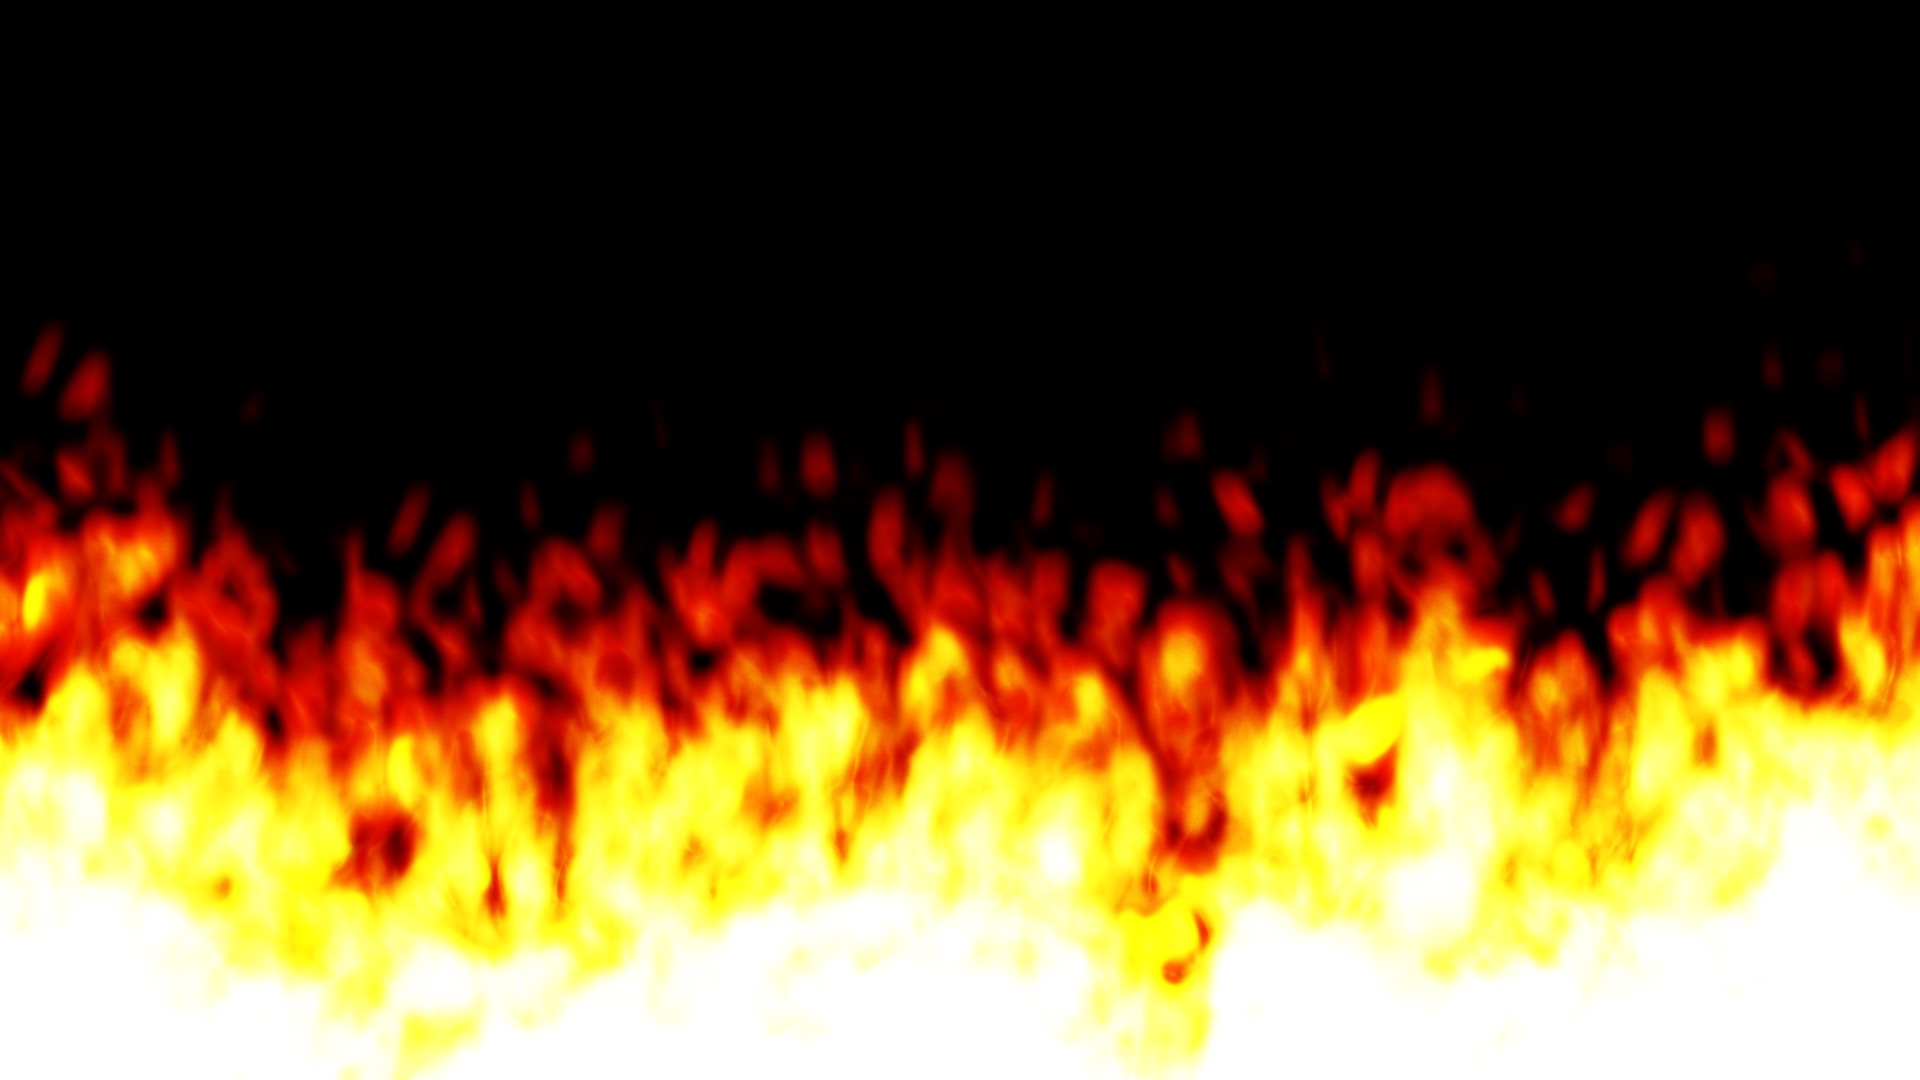 炎の背景動画素材 エントレ 映像素材ストア ストックムービー素材 背景動画素材 Xcream